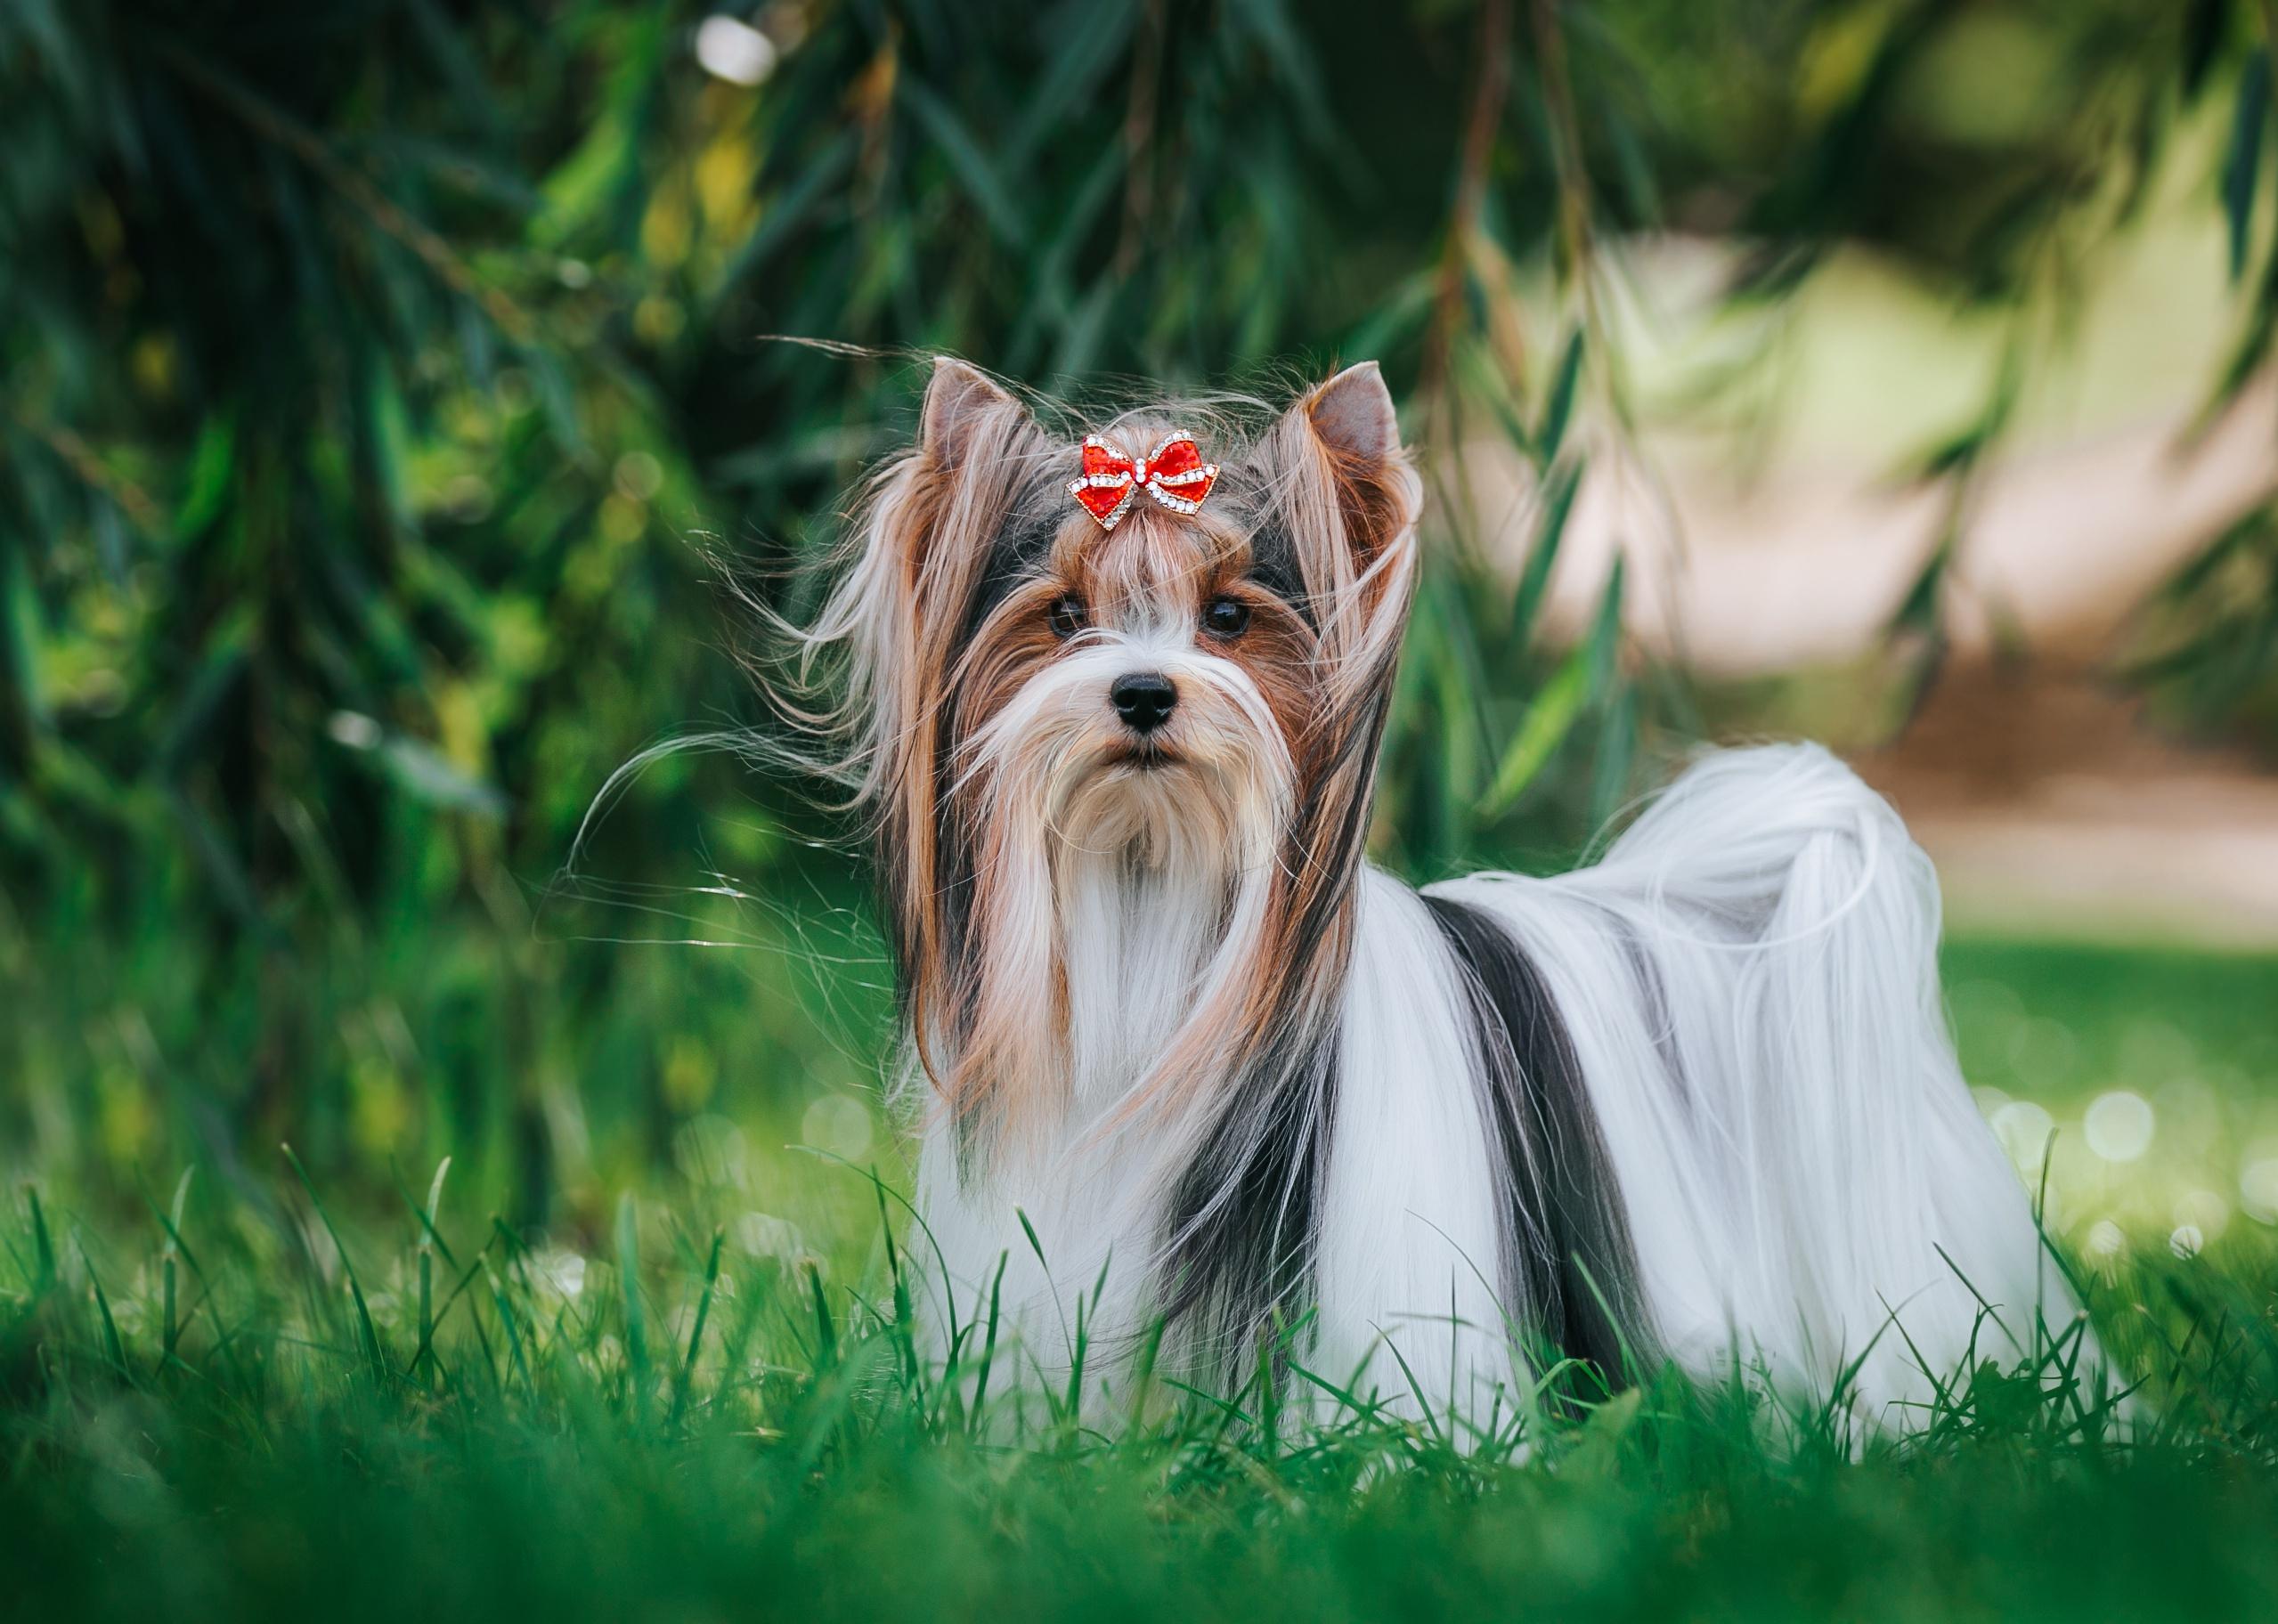 A Biewer terrier puppy standing in green grass.